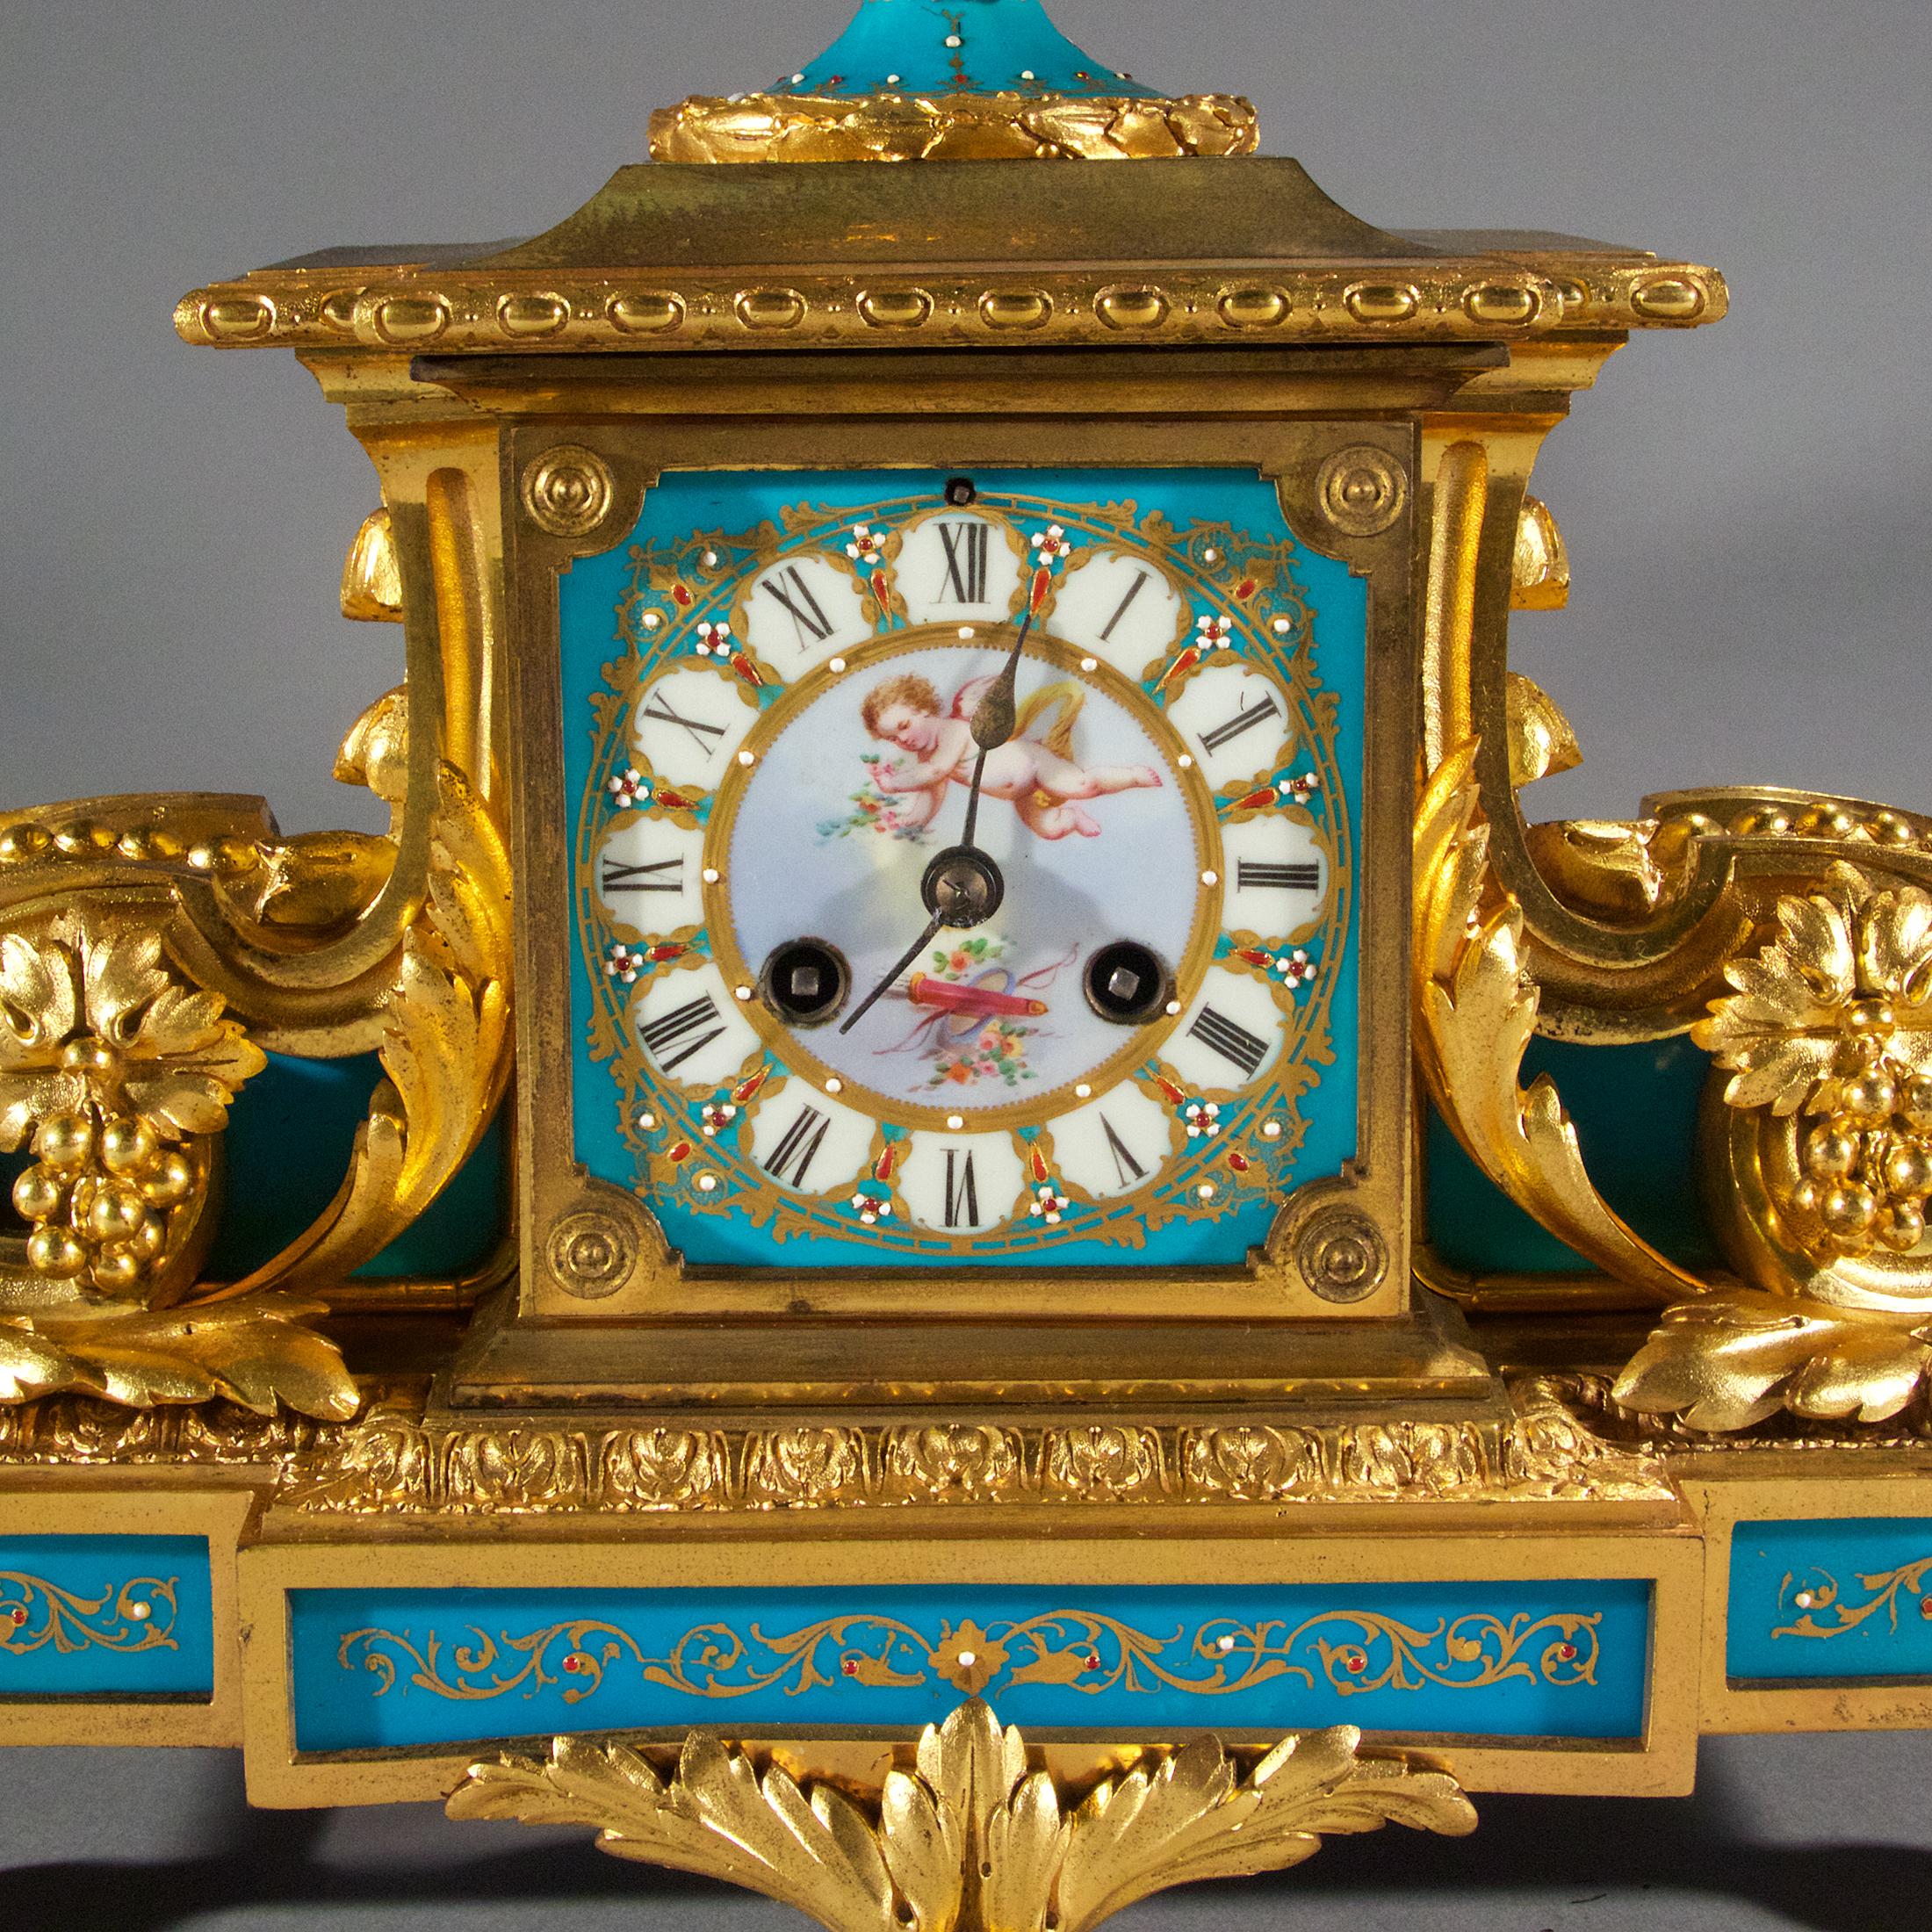 Die feine Qualität Sèvres-Stil Louis XVI vergoldet-Bronze und Juwelen Porzellan türkis Kaminsims Uhr. Auf dem zentralen Emailzifferblatt mit römischen Ziffern befindet sich eine Urne mit zwei Henkeln und Weintrauben.

Herkunft: Französisch
Datum: